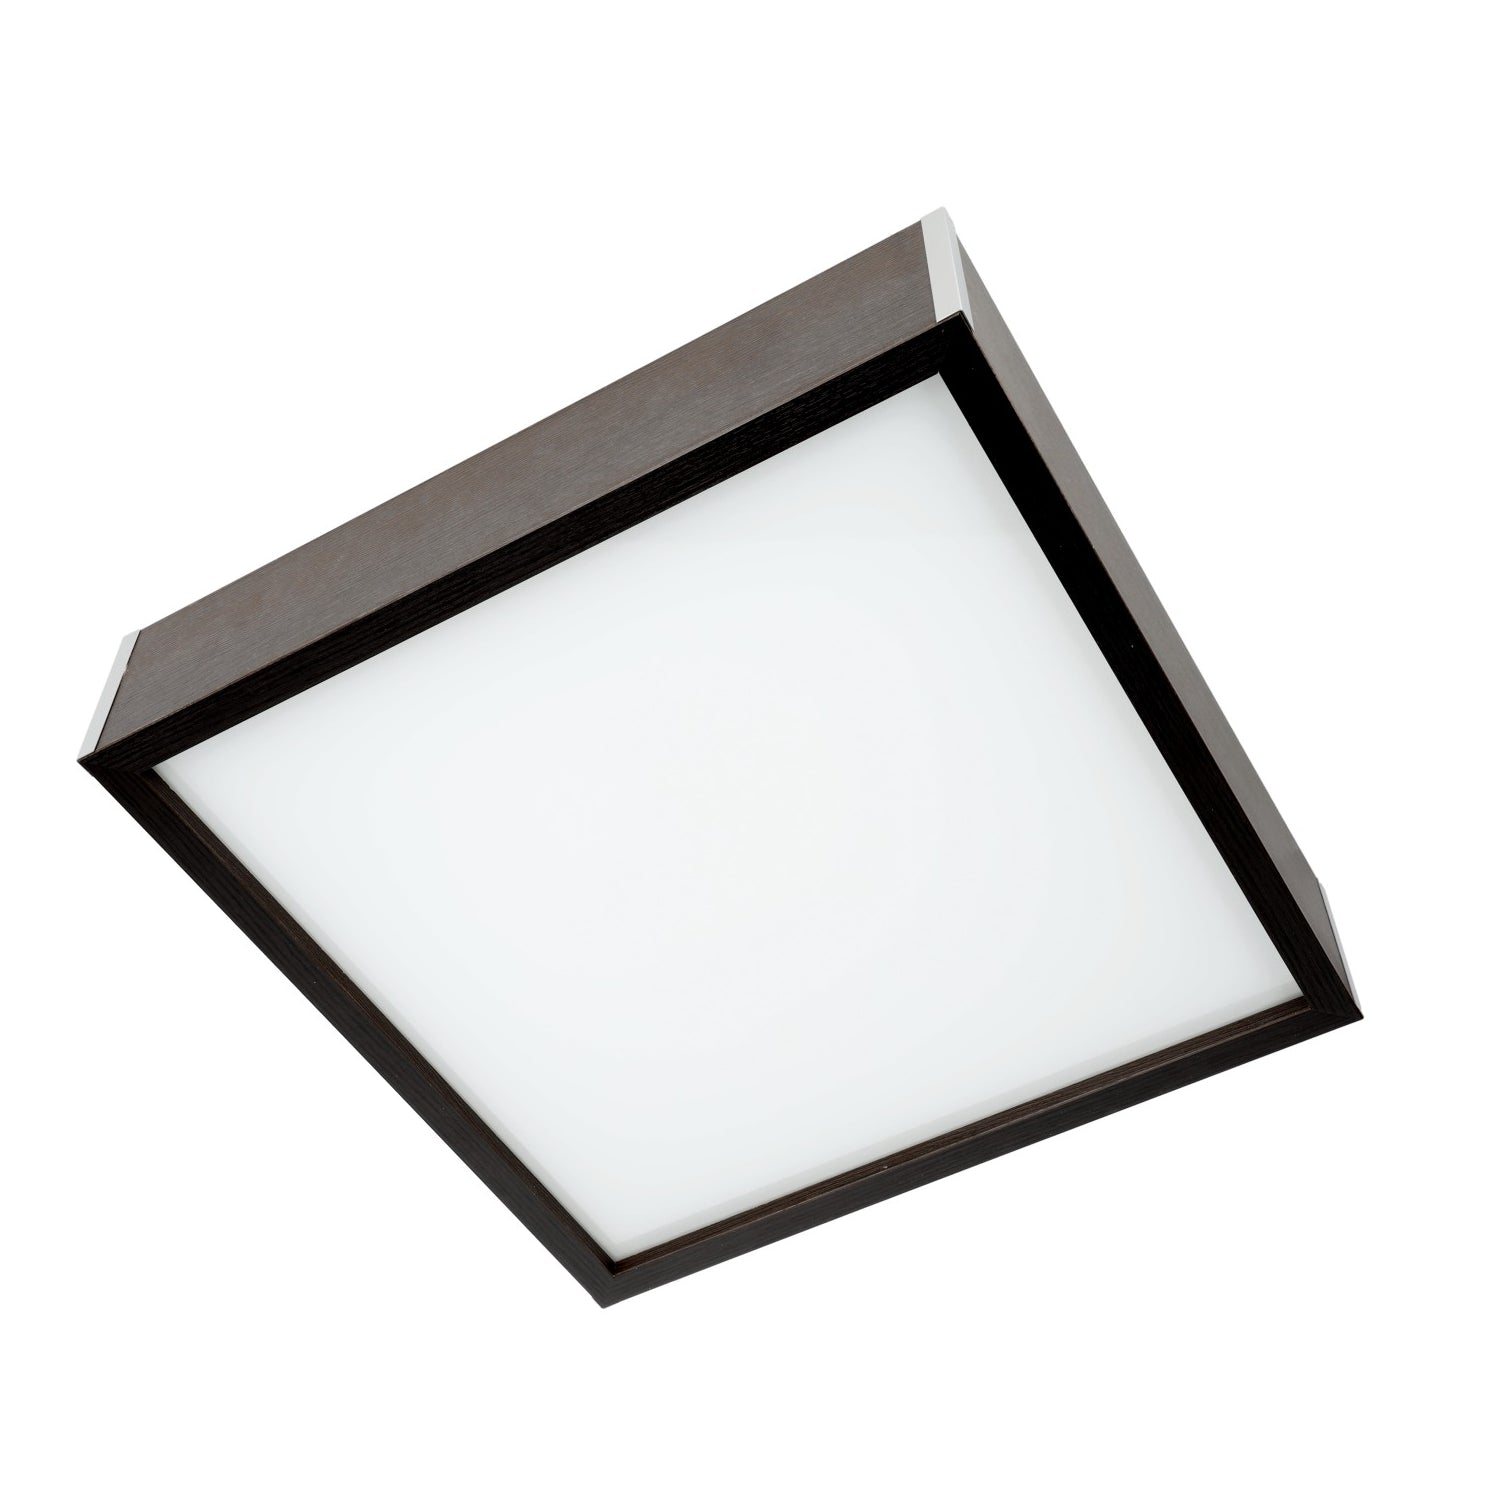 Lampa sufitowa PLAFON 3x23W E27 WENGE kwadratowy 3 punkty światła